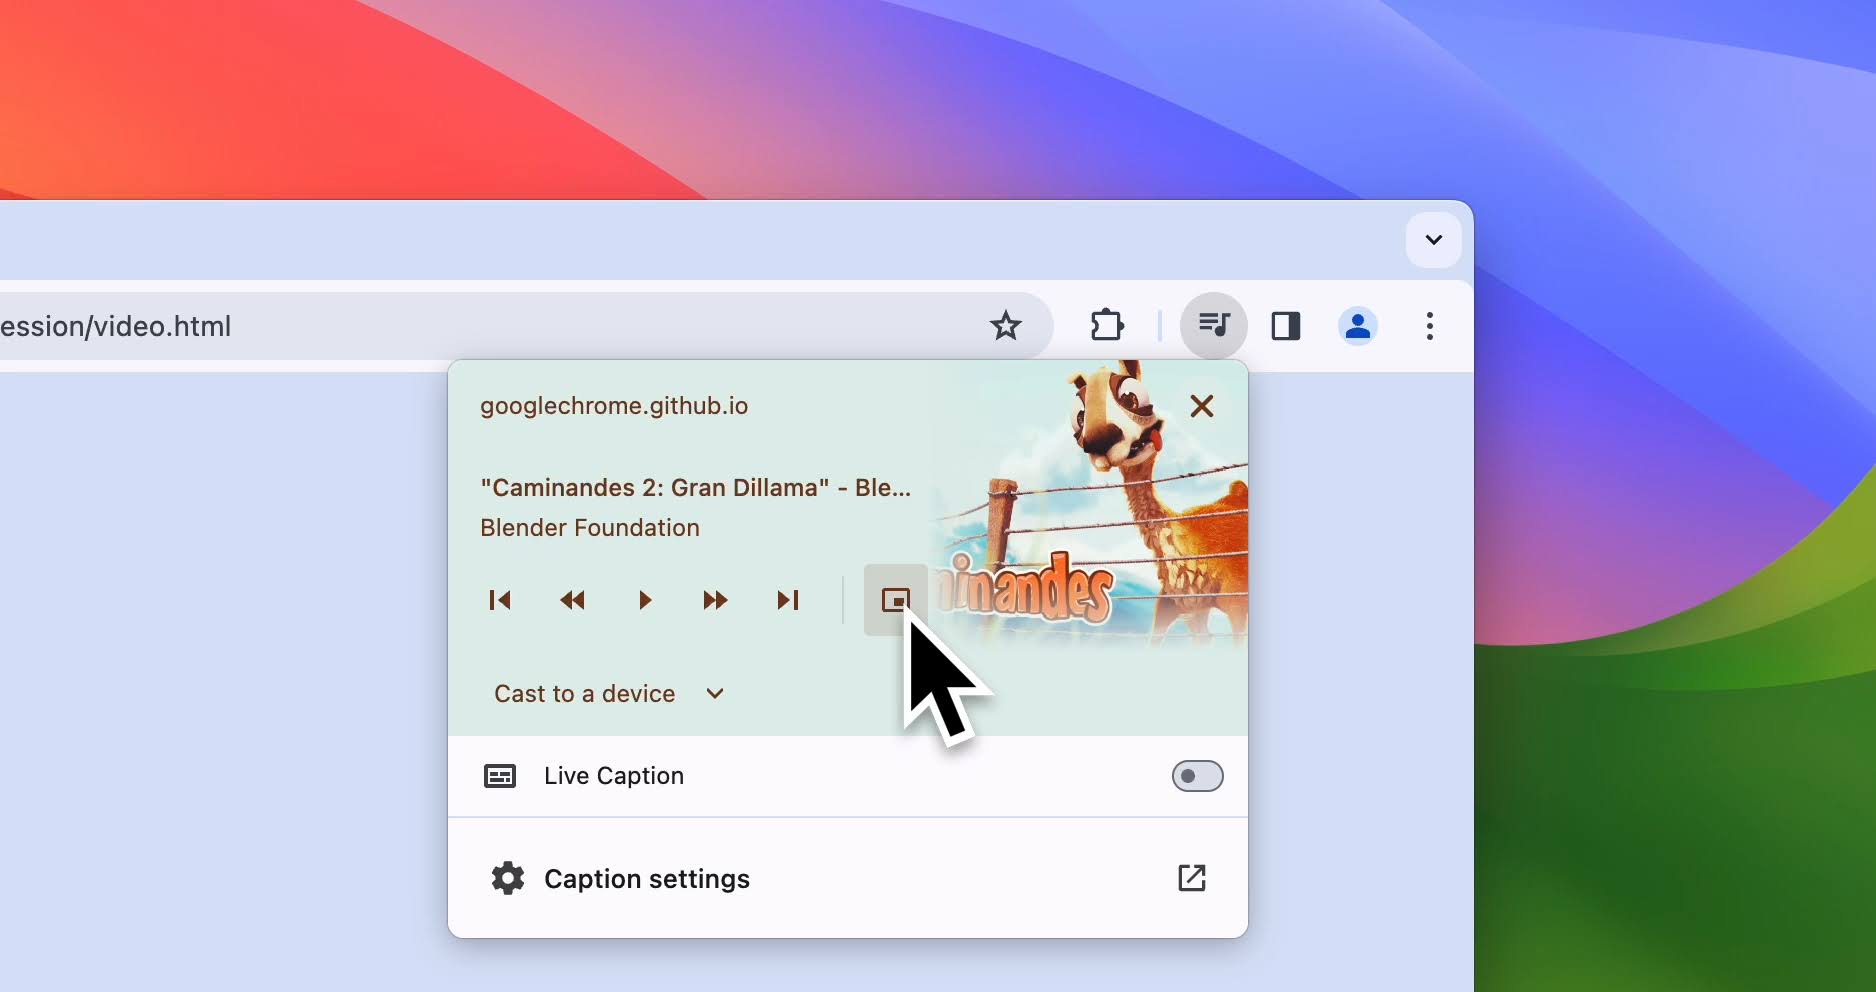 Снимок экрана управления мультимедиа в браузере Chrome с курсором на пользовательском элементе управления «картинка в картинке».